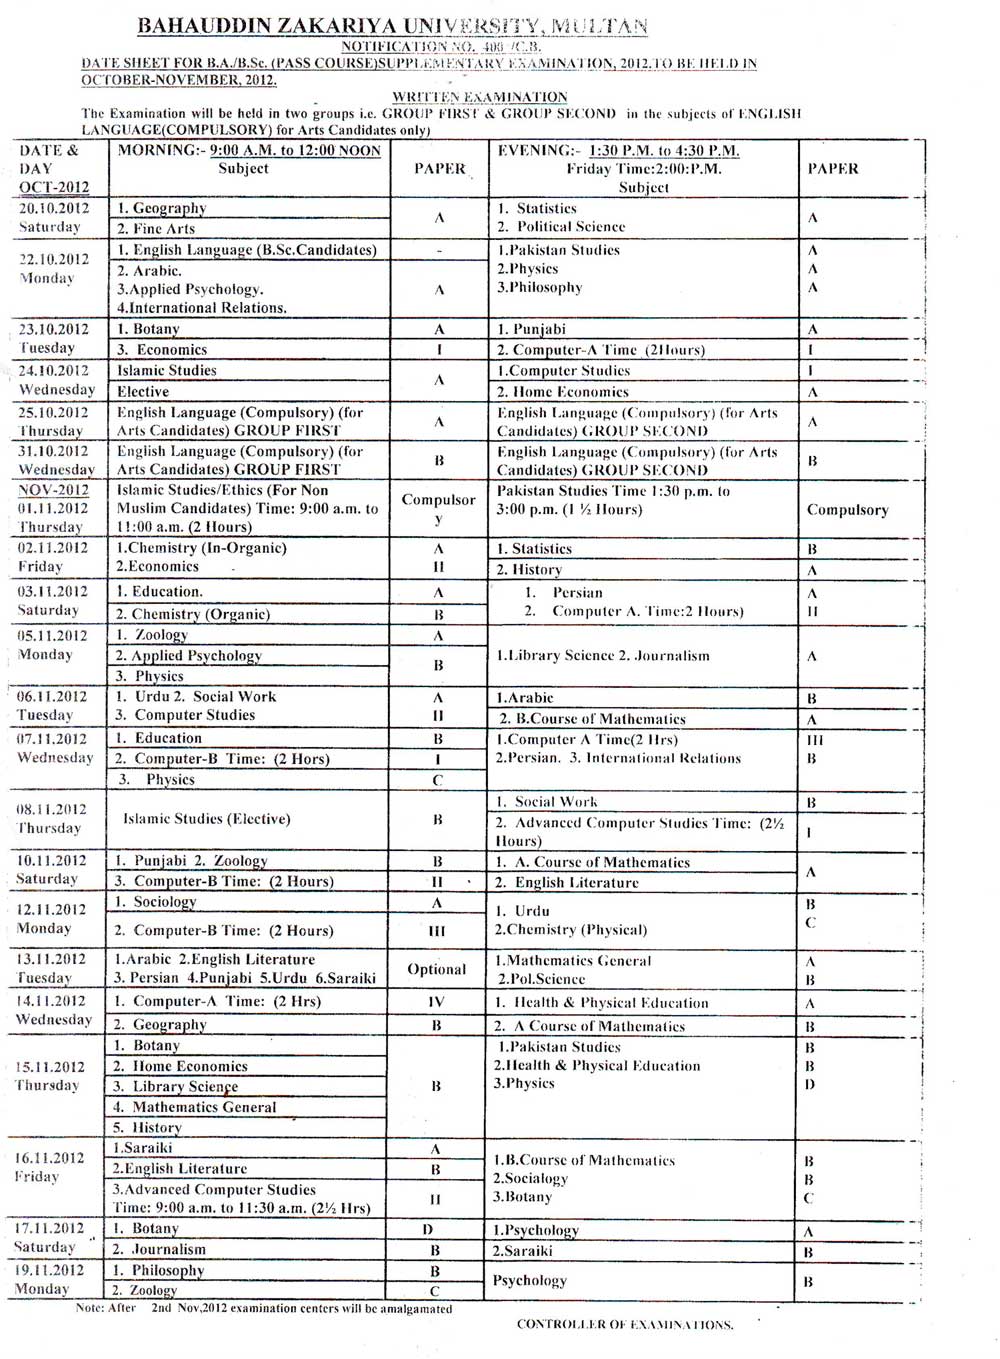 BZU BA And BSc Supplementary Exams Date Sheet 2012